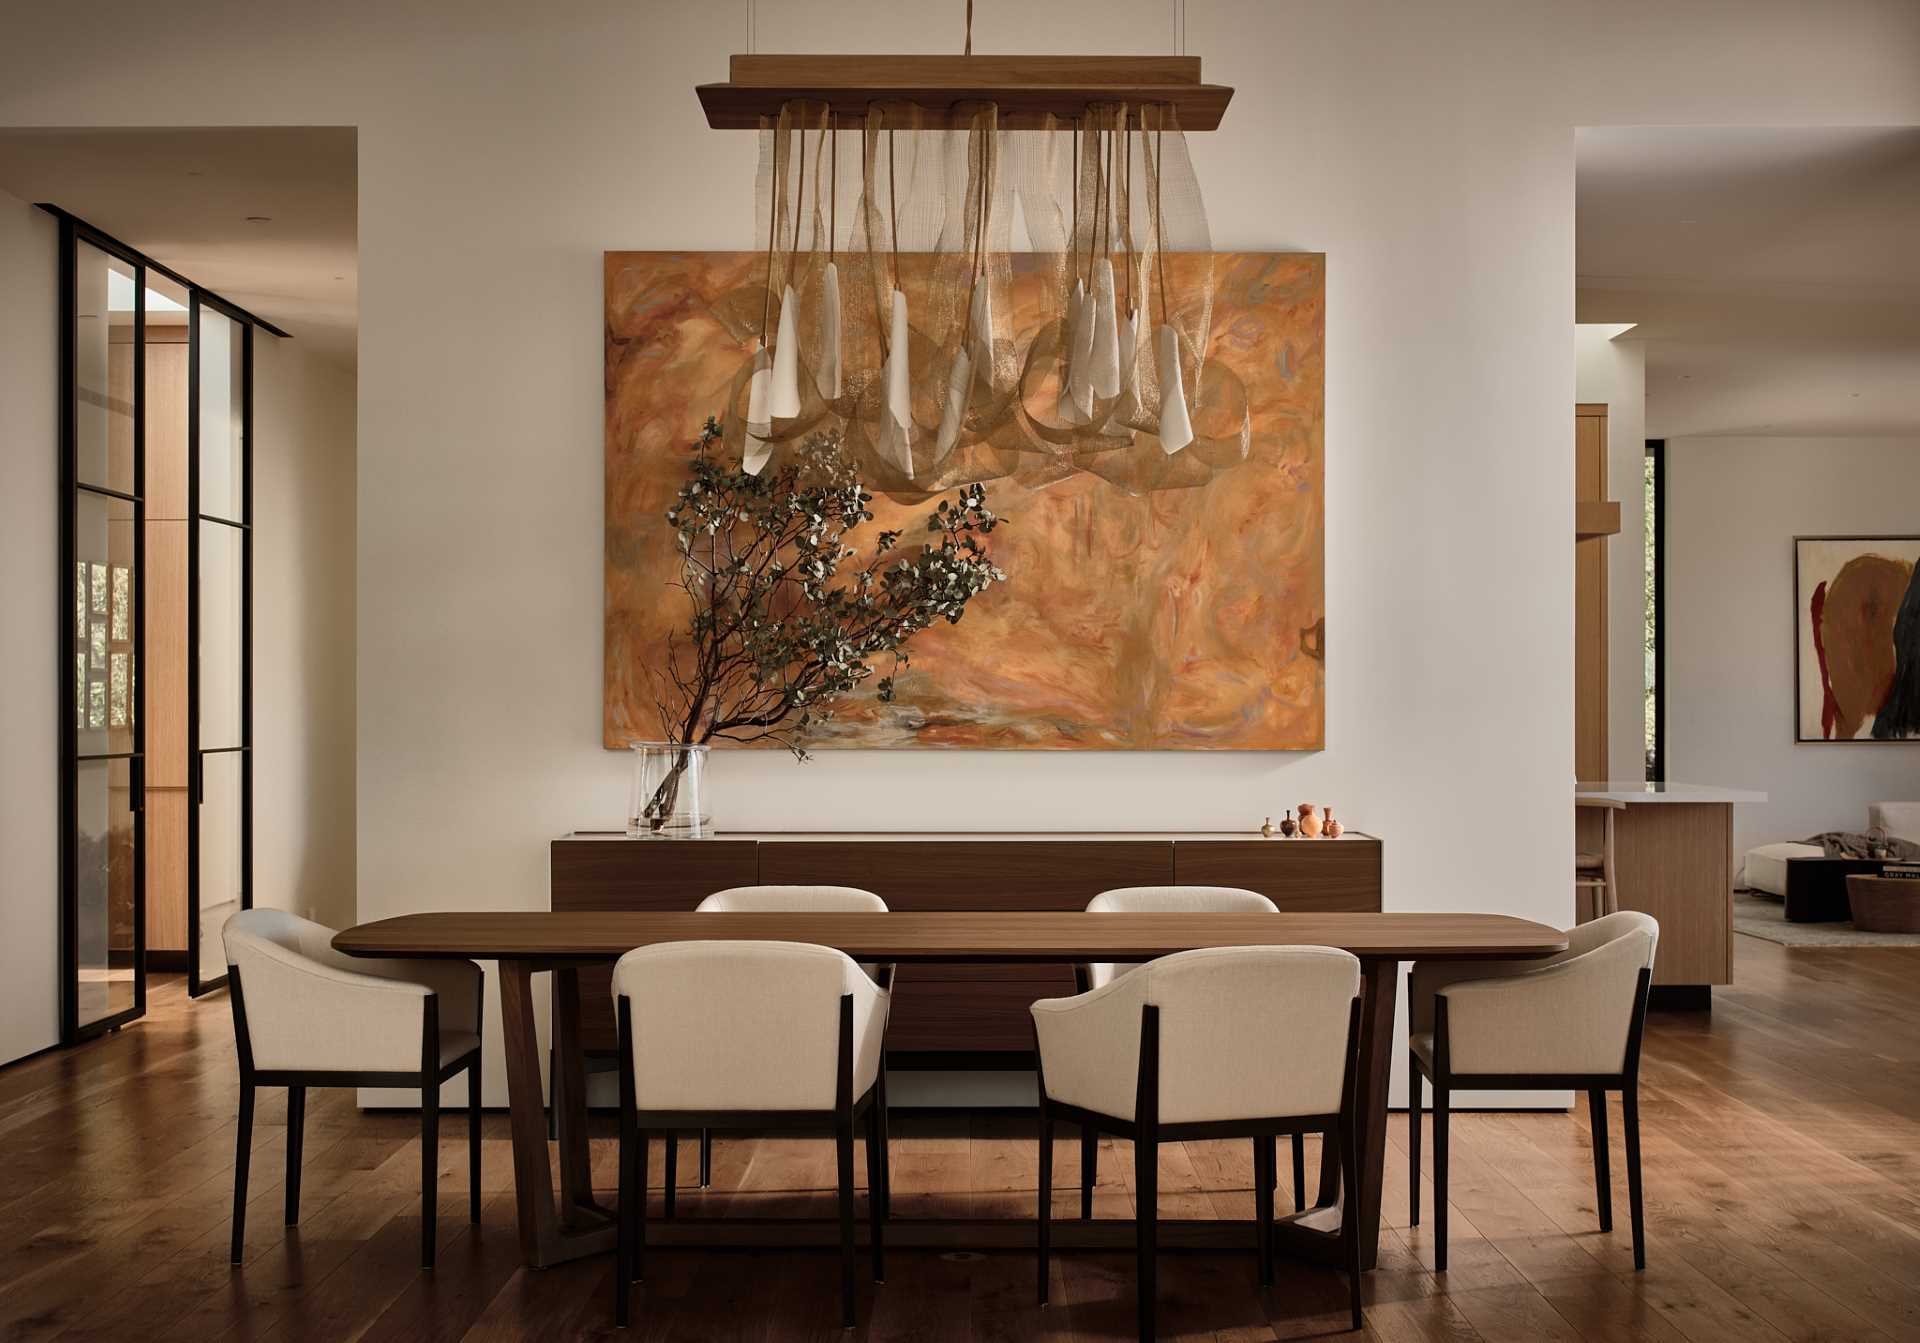 در یک اتاق ناهارخوری رسمی، یک میز چوبی با صندلی های معاصر احاطه شده است، در حالی که یک نور مجسمه ای بالای میز و یک قطعه هنری بزرگ روی دیوار آویزان است.